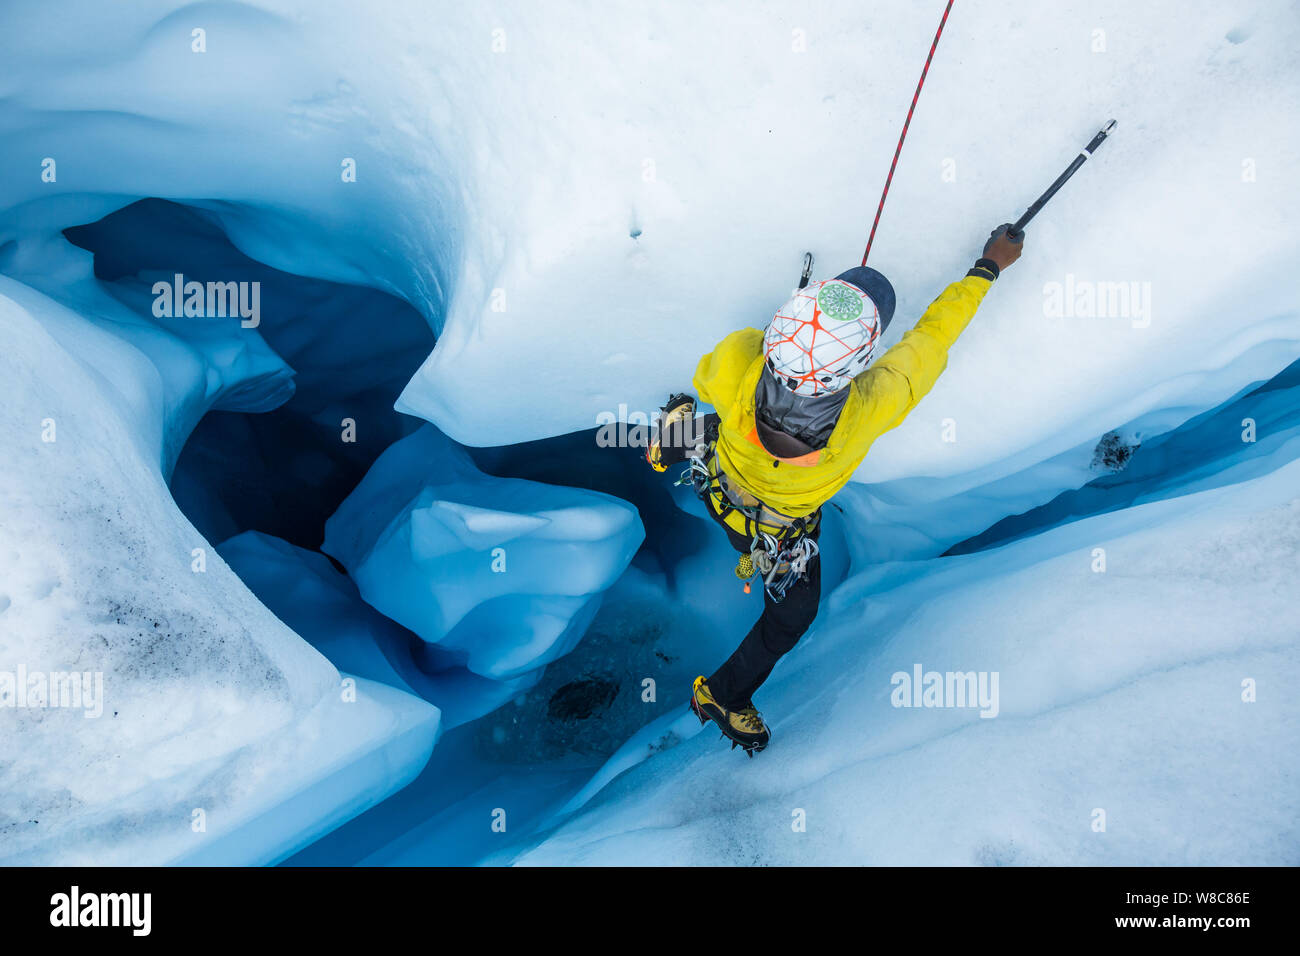 Ice climber von oben, als er aus einer vertikalen Moulin im Gletschereis klettert. Wasser aus dem schmelzenden Matanuska Gletscher Schnitte interessante Formationen Stockfoto